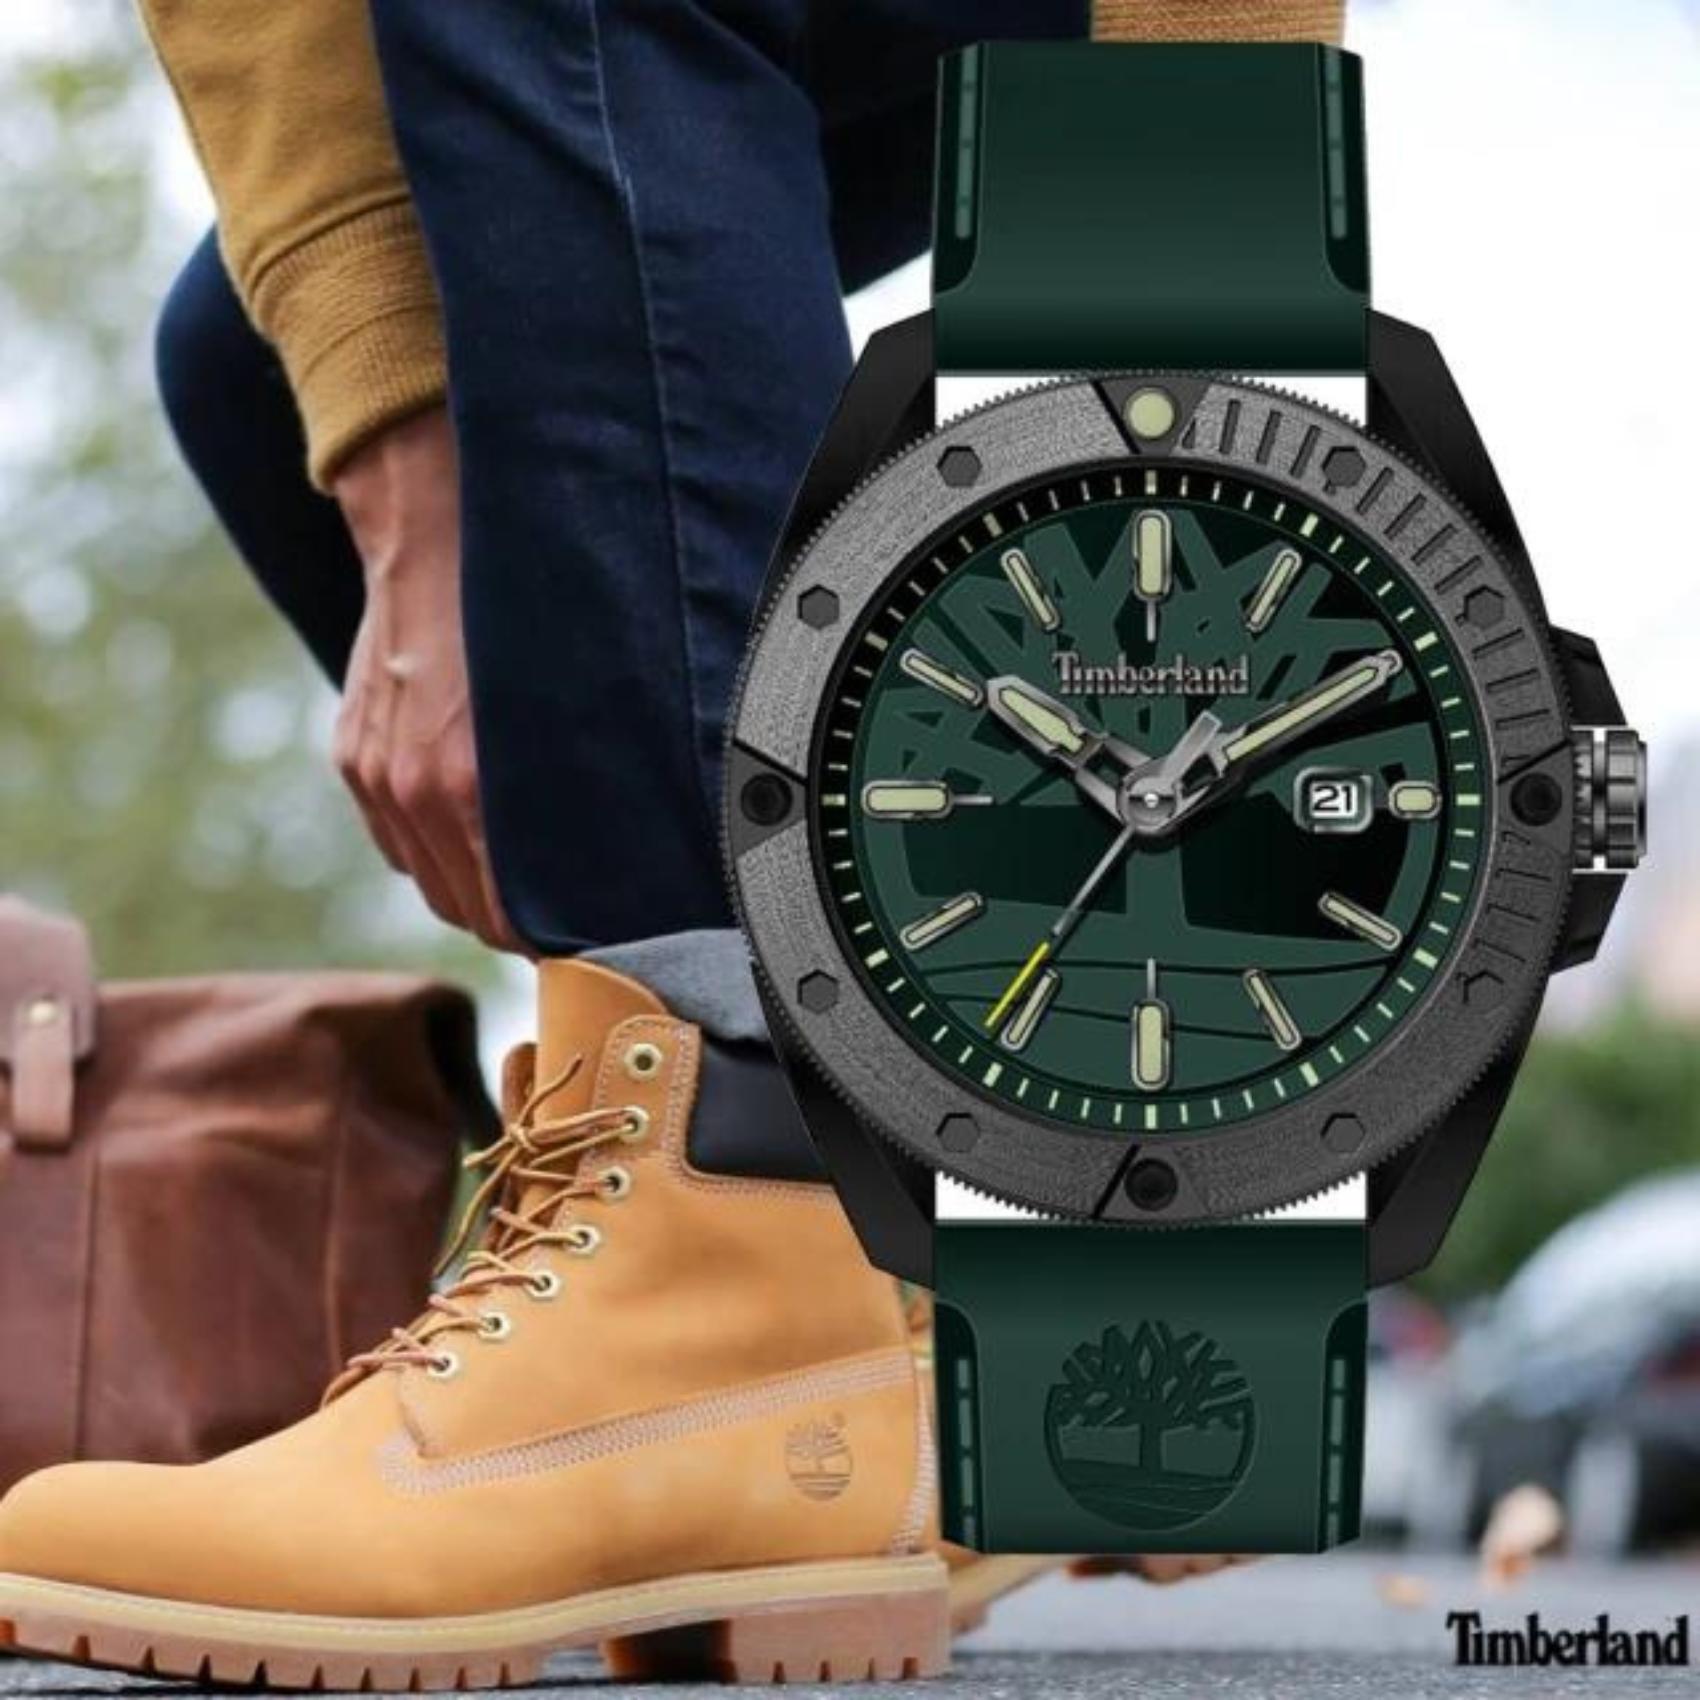 Ανδρικό ρολόι Timberland Carrigan TDWGN2102903 με πράσινο καουτσούκ λουράκι και πράσινο καντράν διαμέτρου 4mm με ένδειξη ημερομηνίας.